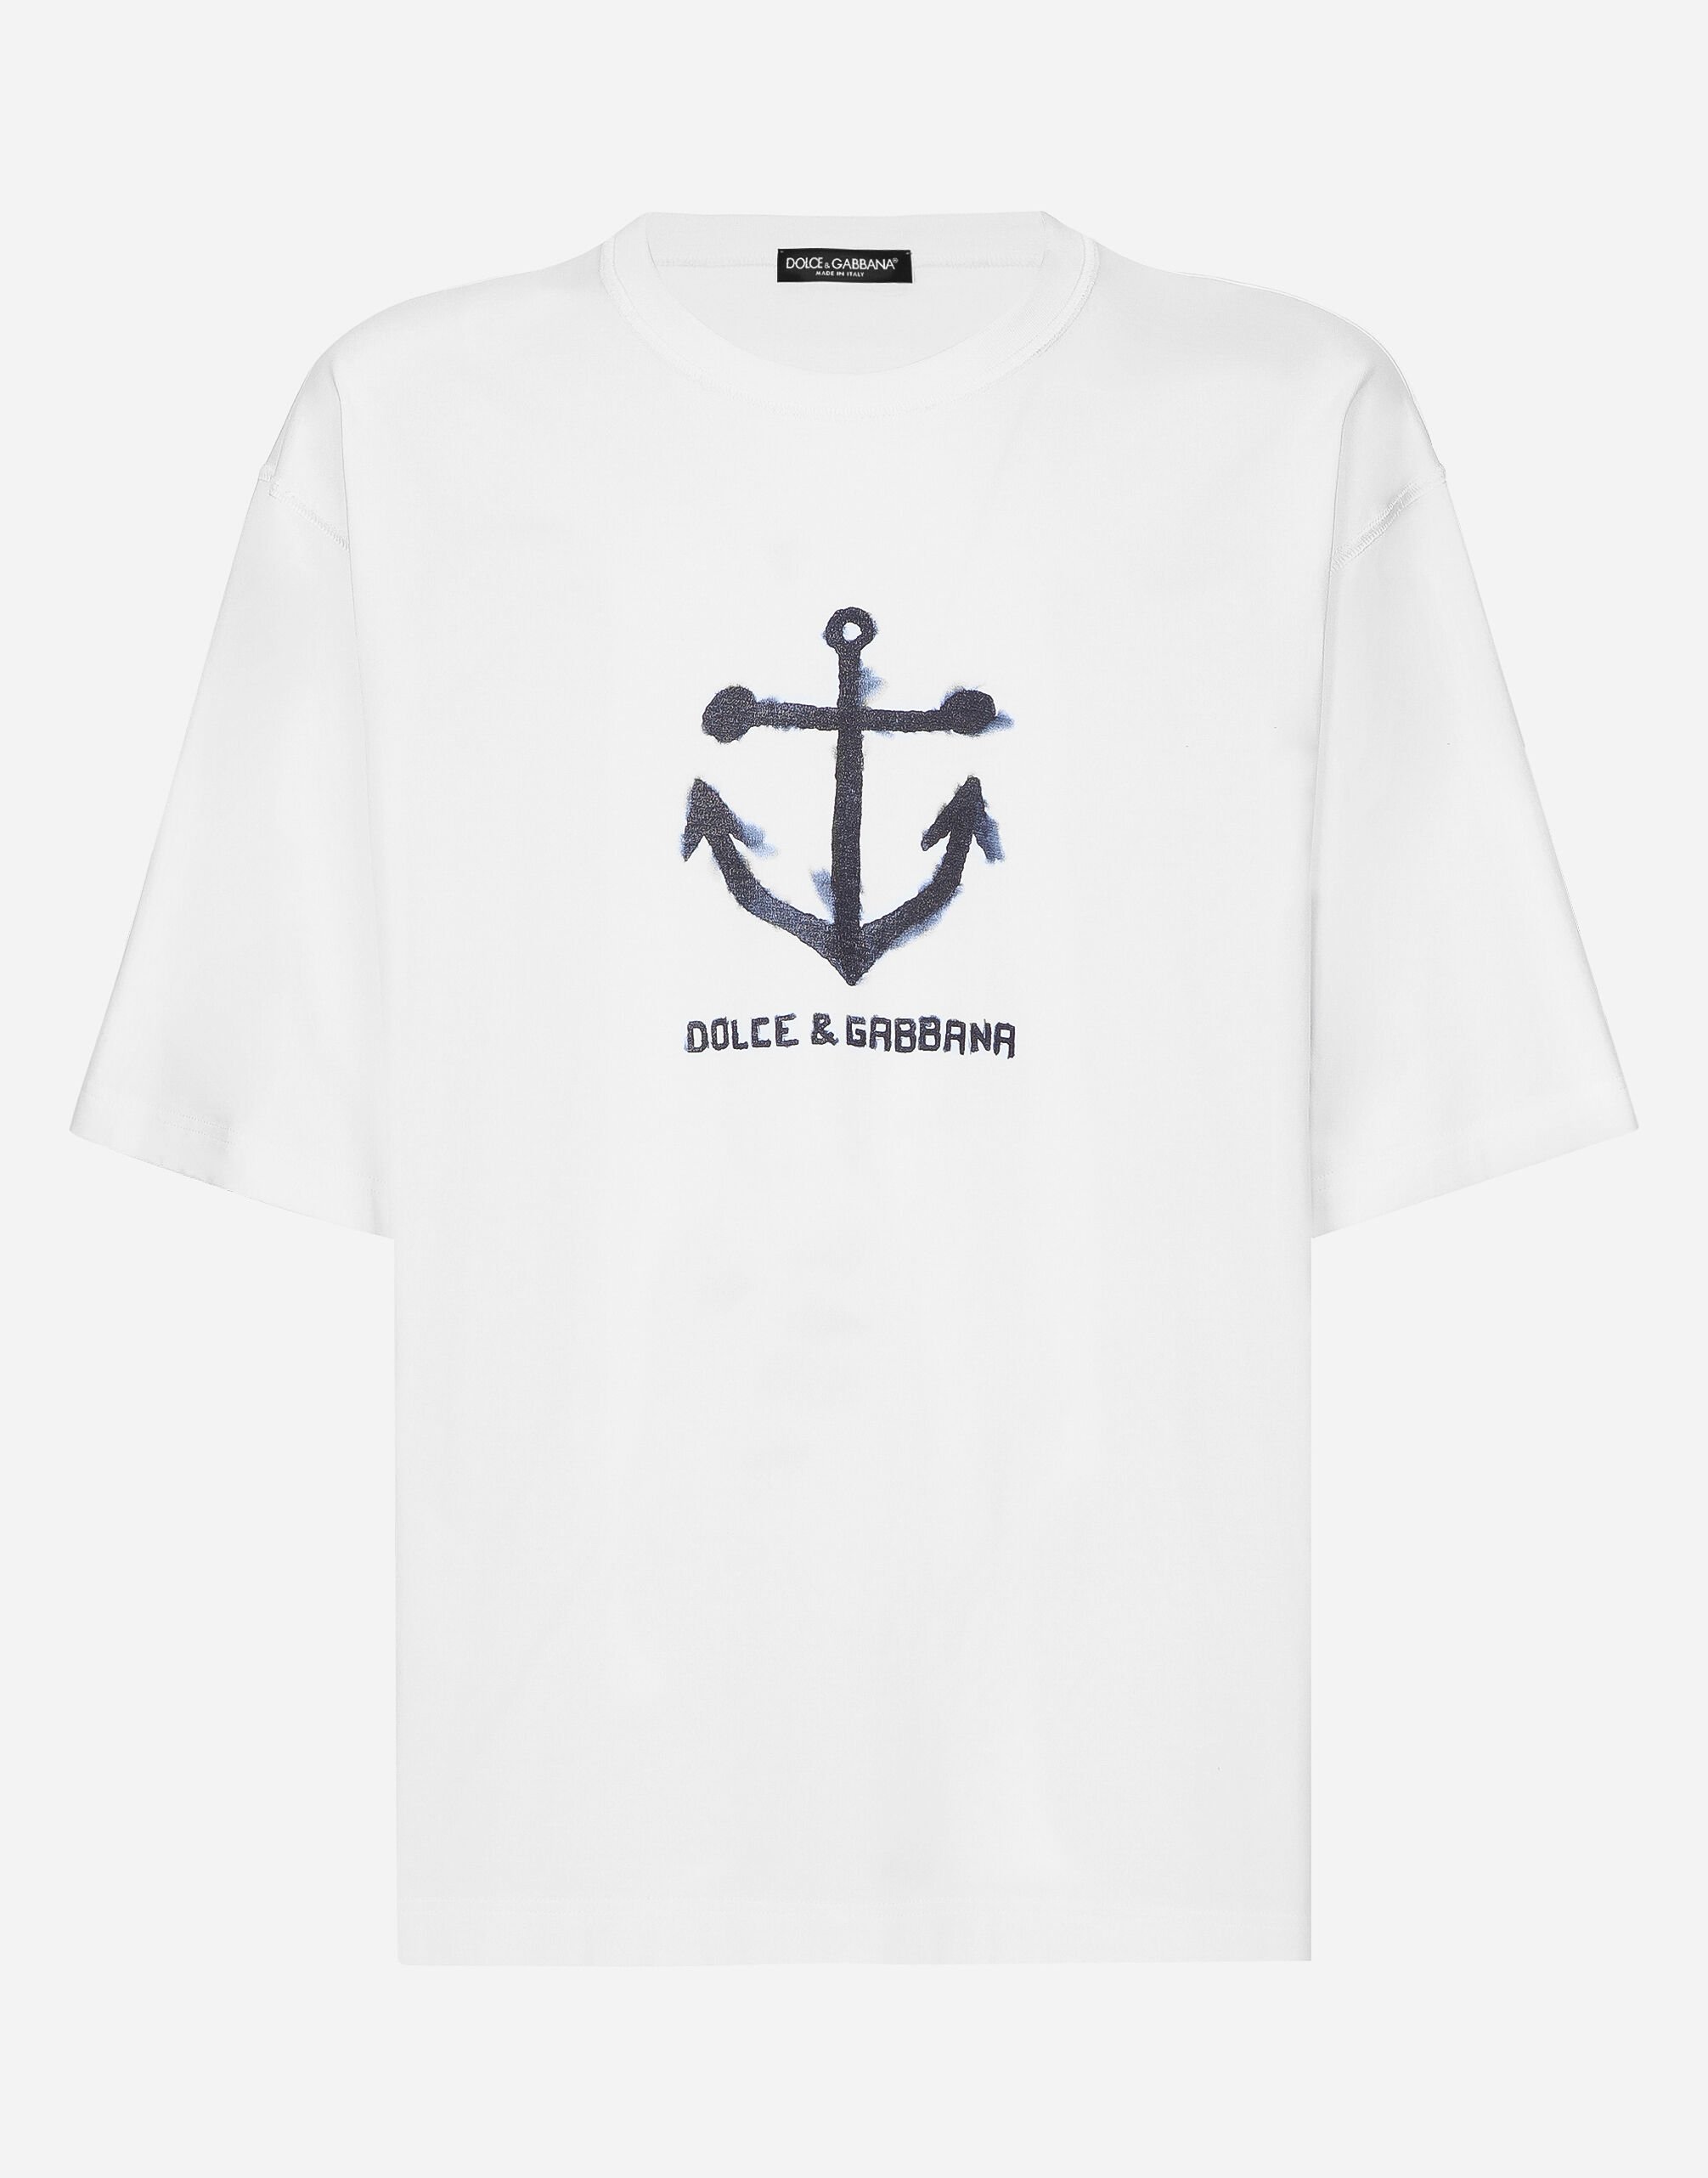 Dolce & Gabbana Tシャツ ショートスリーブ マリーナプリント ブルー G5LI2TFURHJ